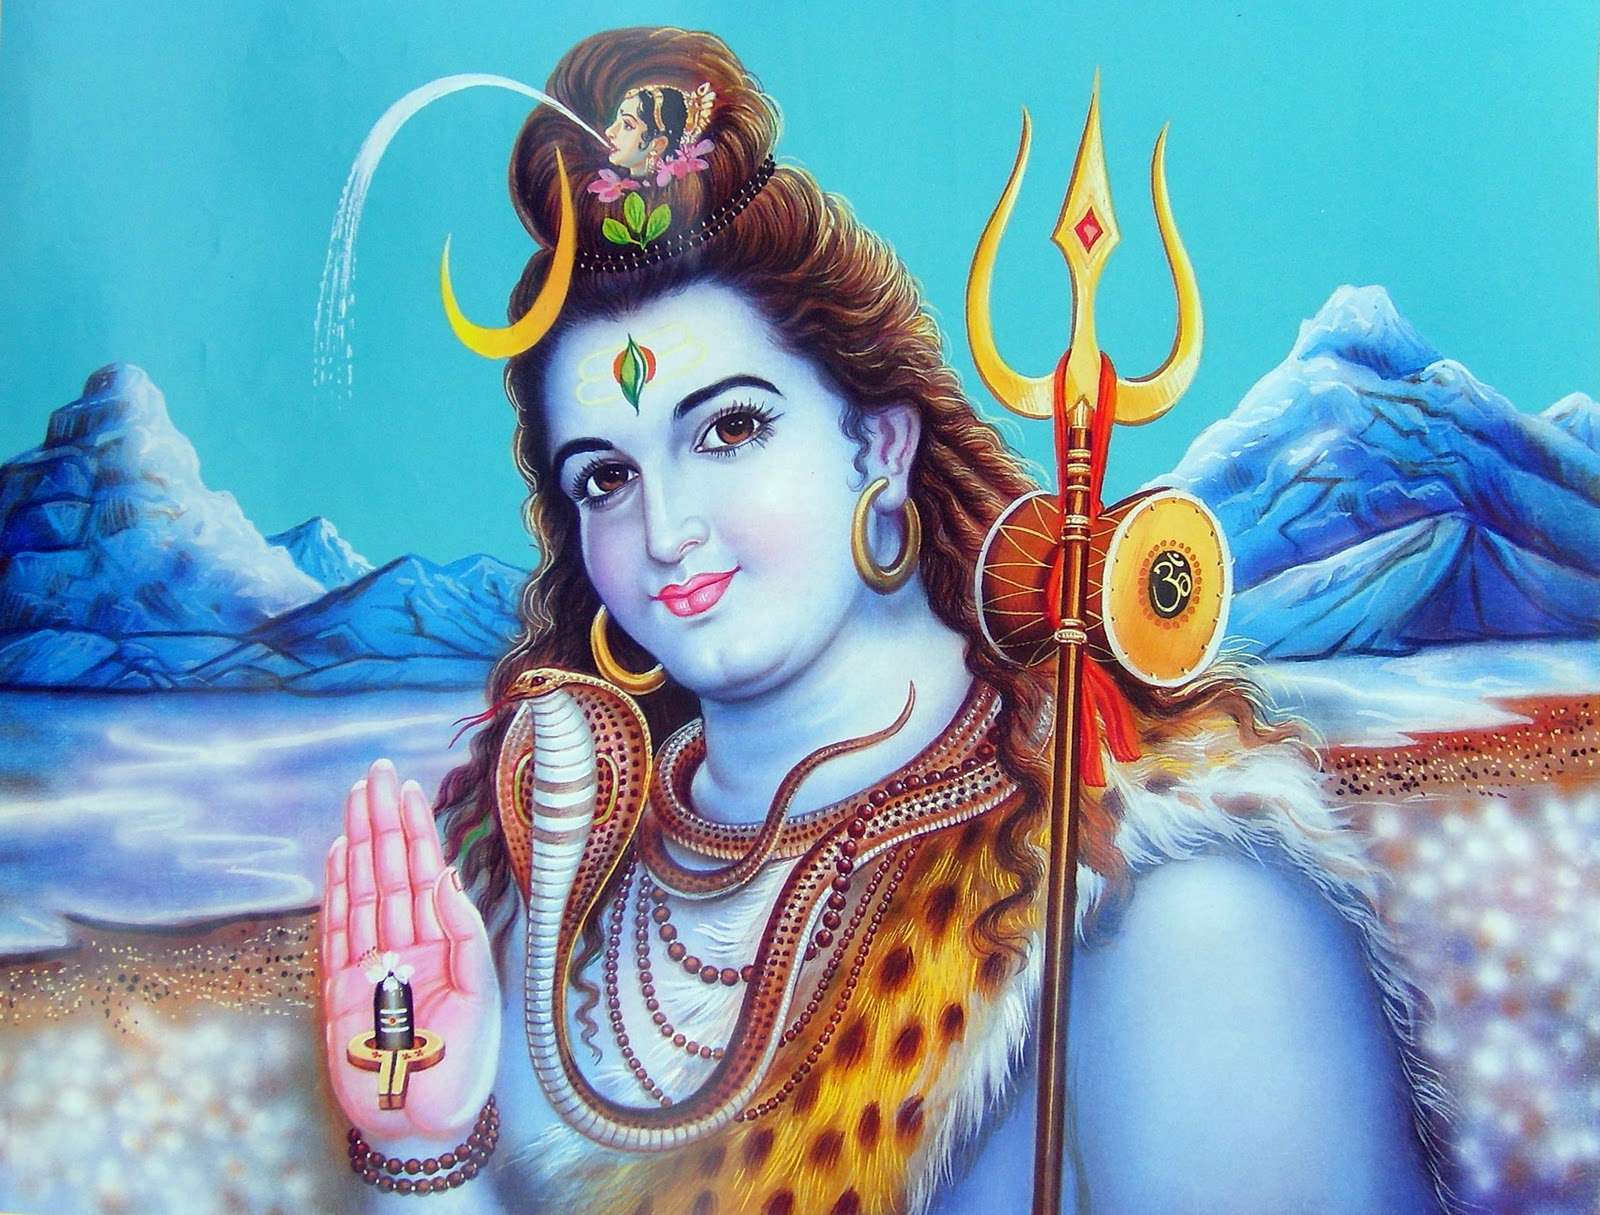 Lord Shiva HD Wallpaper